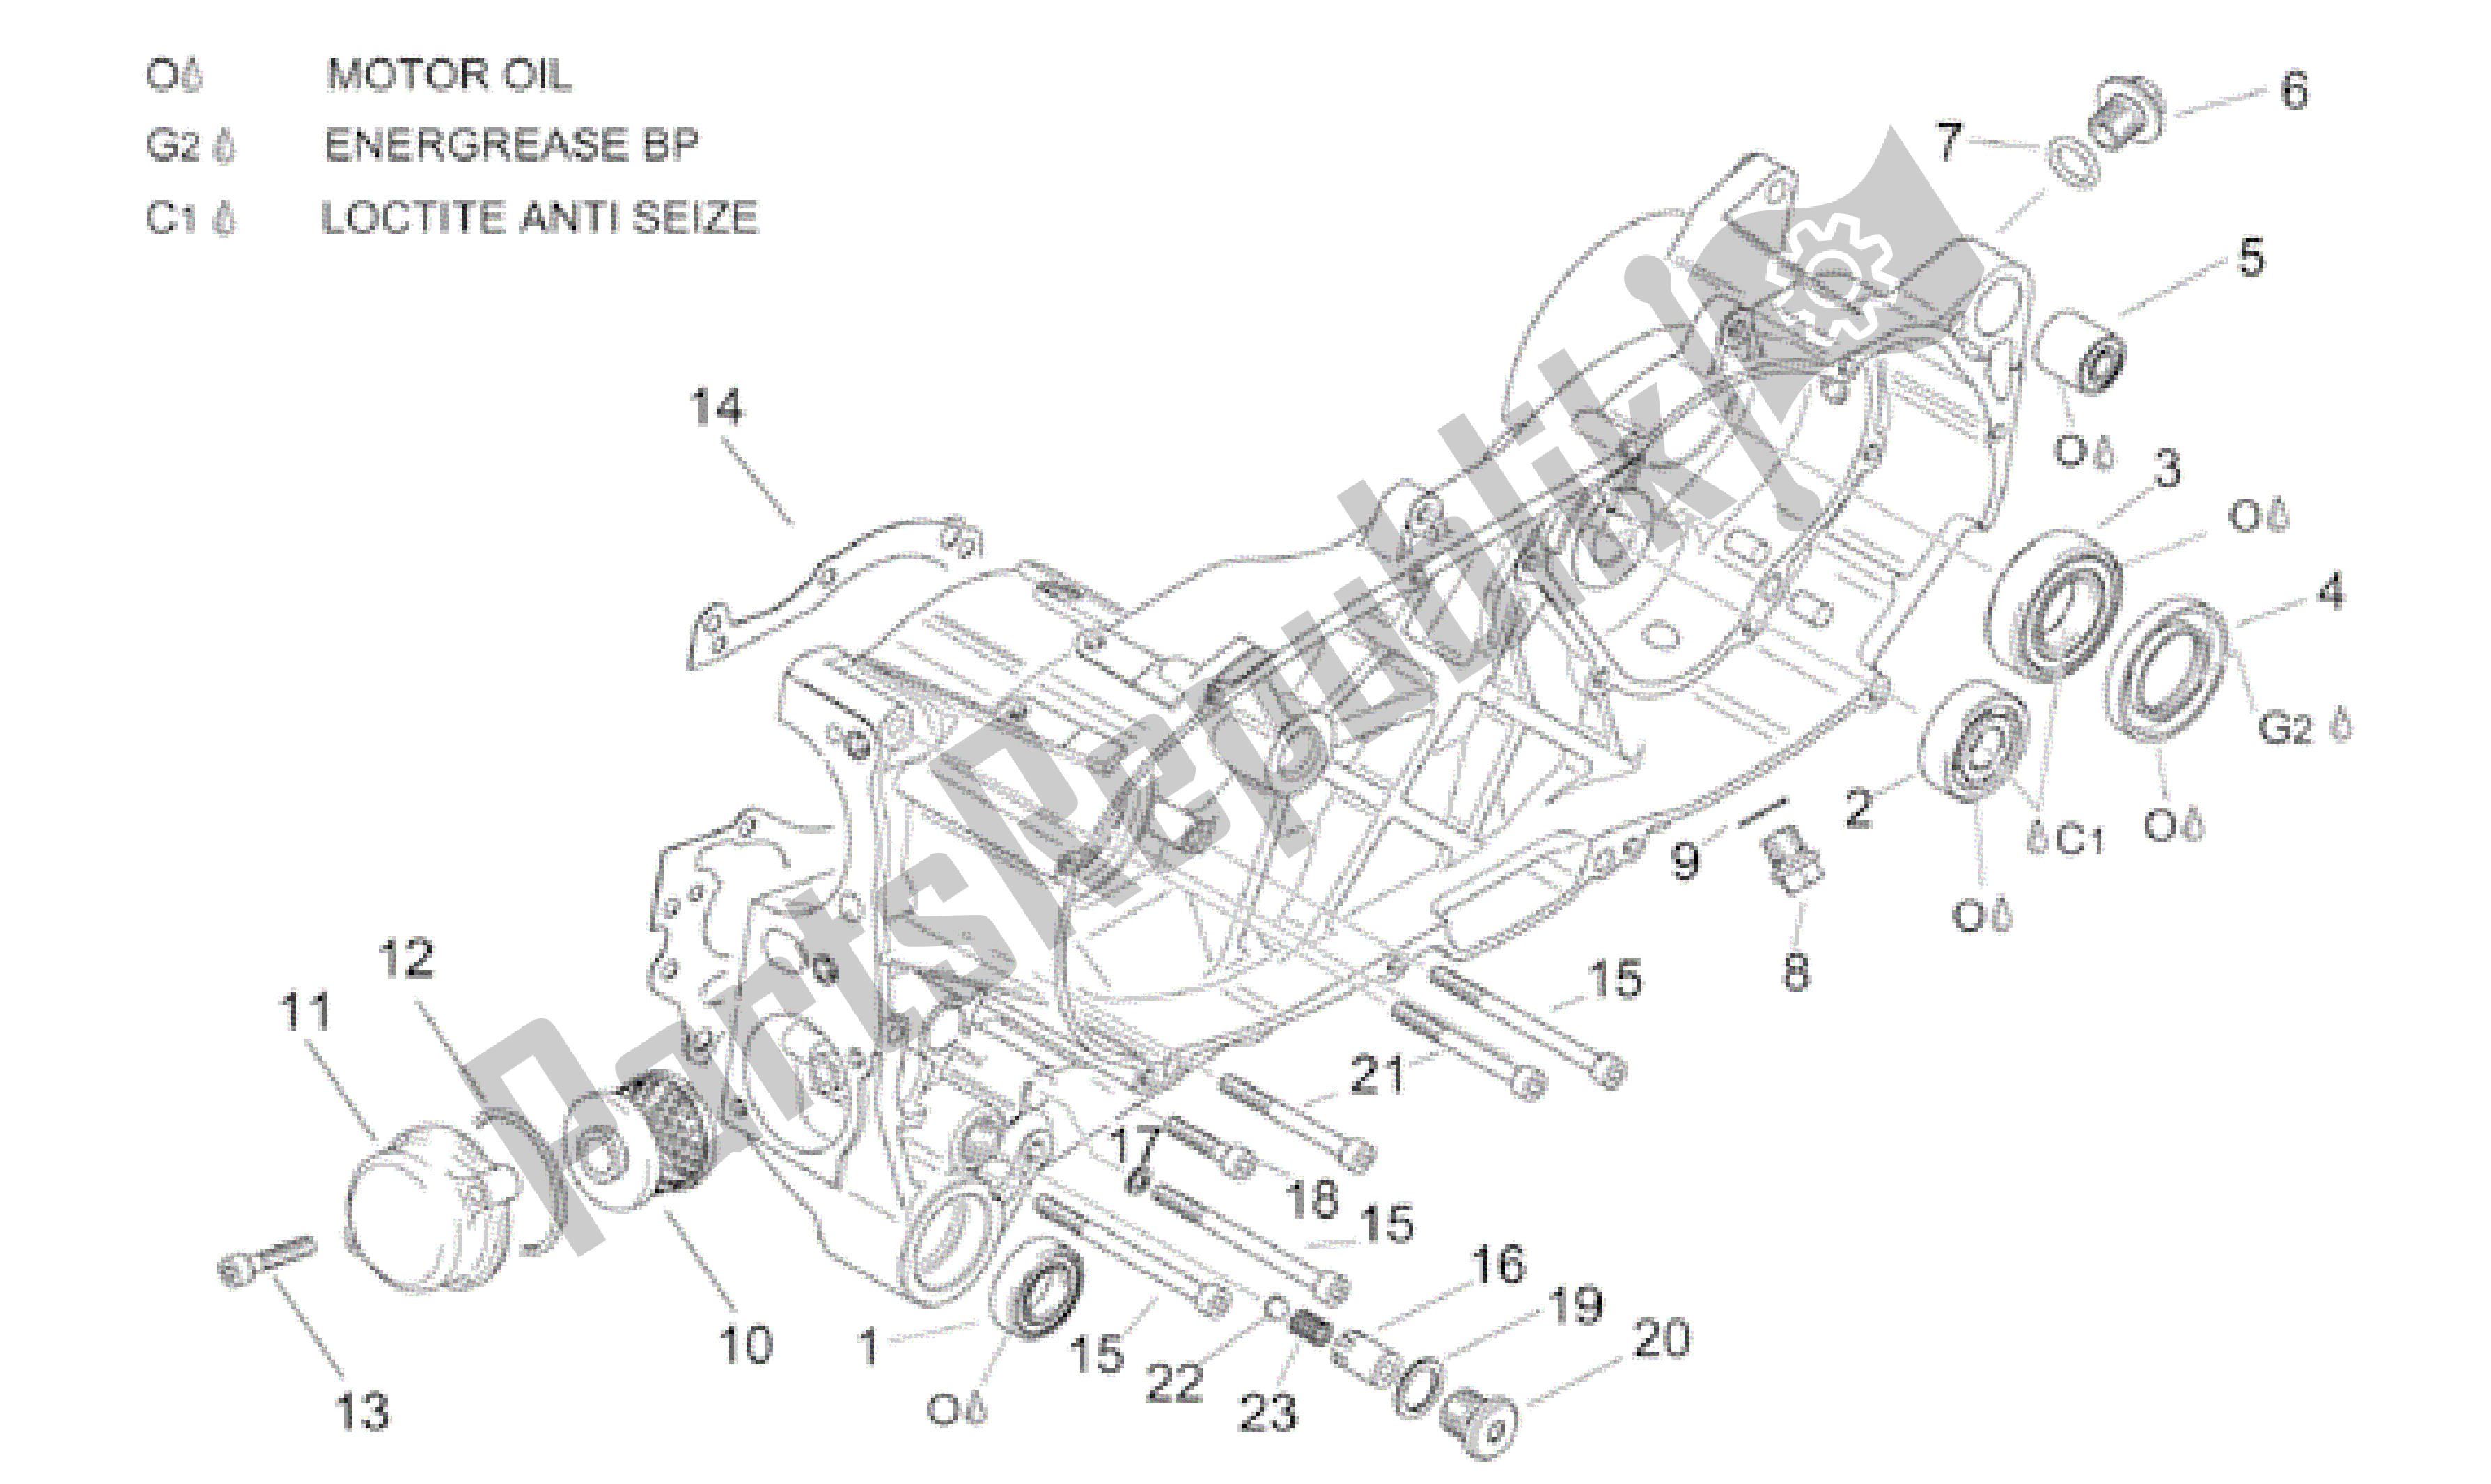 All parts for the Central Semi-crankcase of the Aprilia Leonardo 150 2001